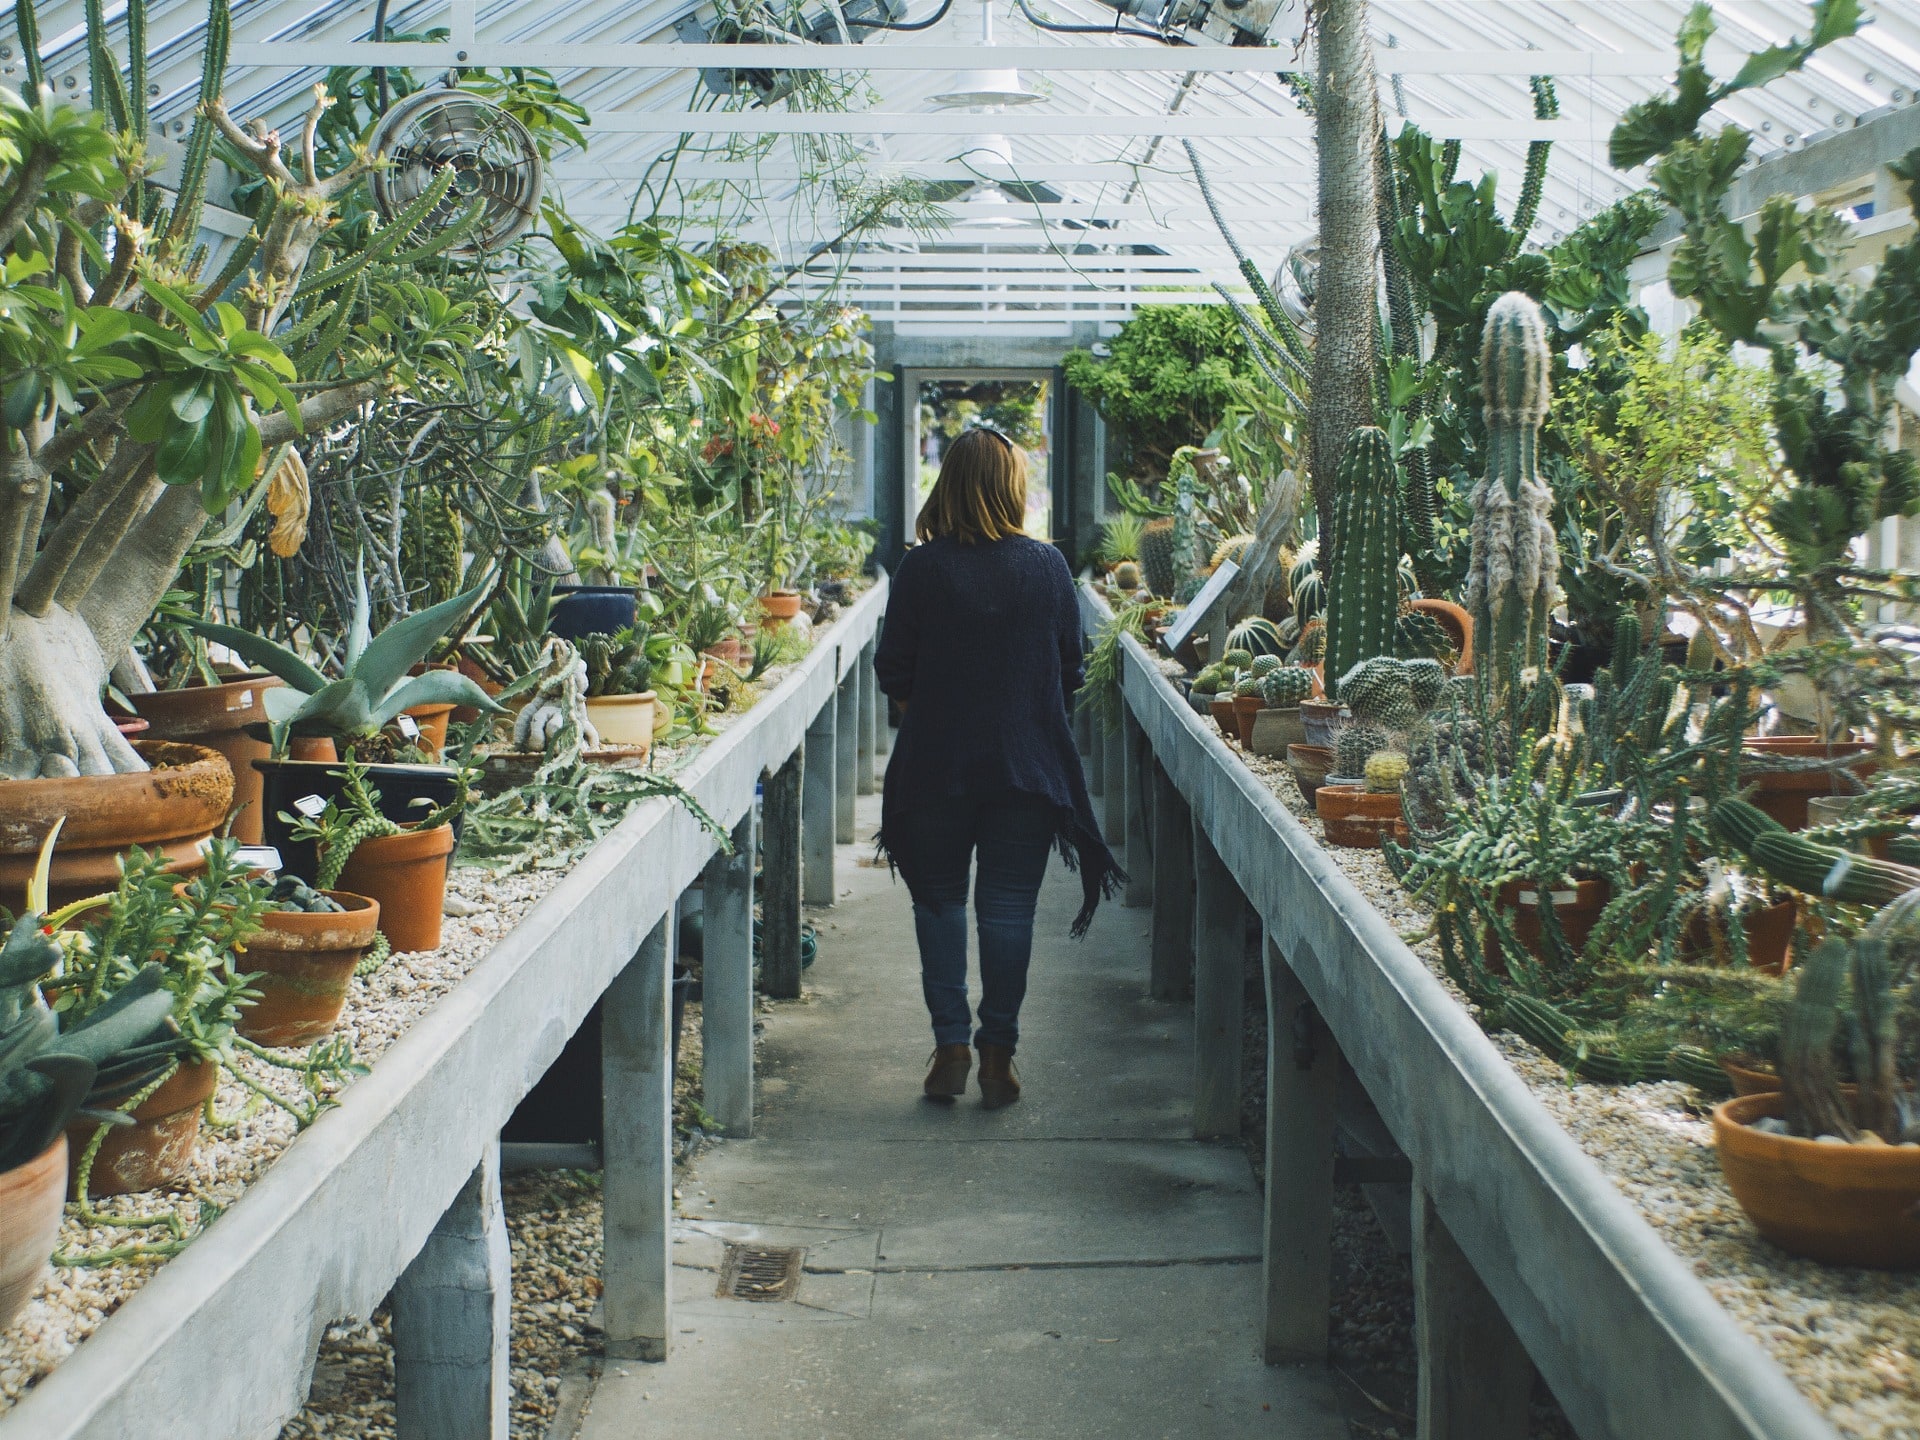 Cacti on display at Moorten Botanical Garden